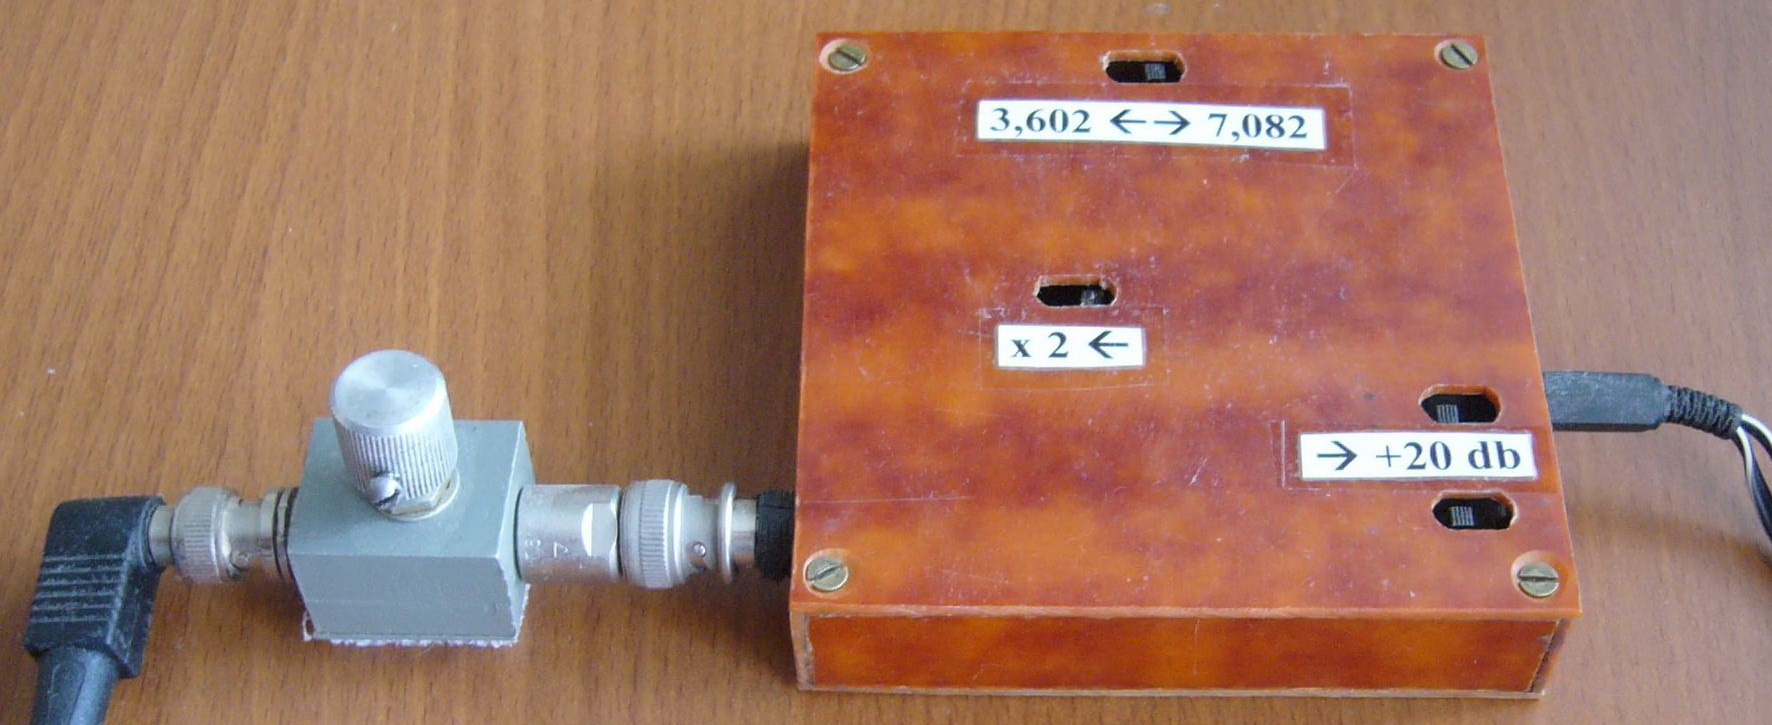 Практикум радиолюбителя: Супергетеродинный АМ радиоприемник своими руками на частоту 27МГц.